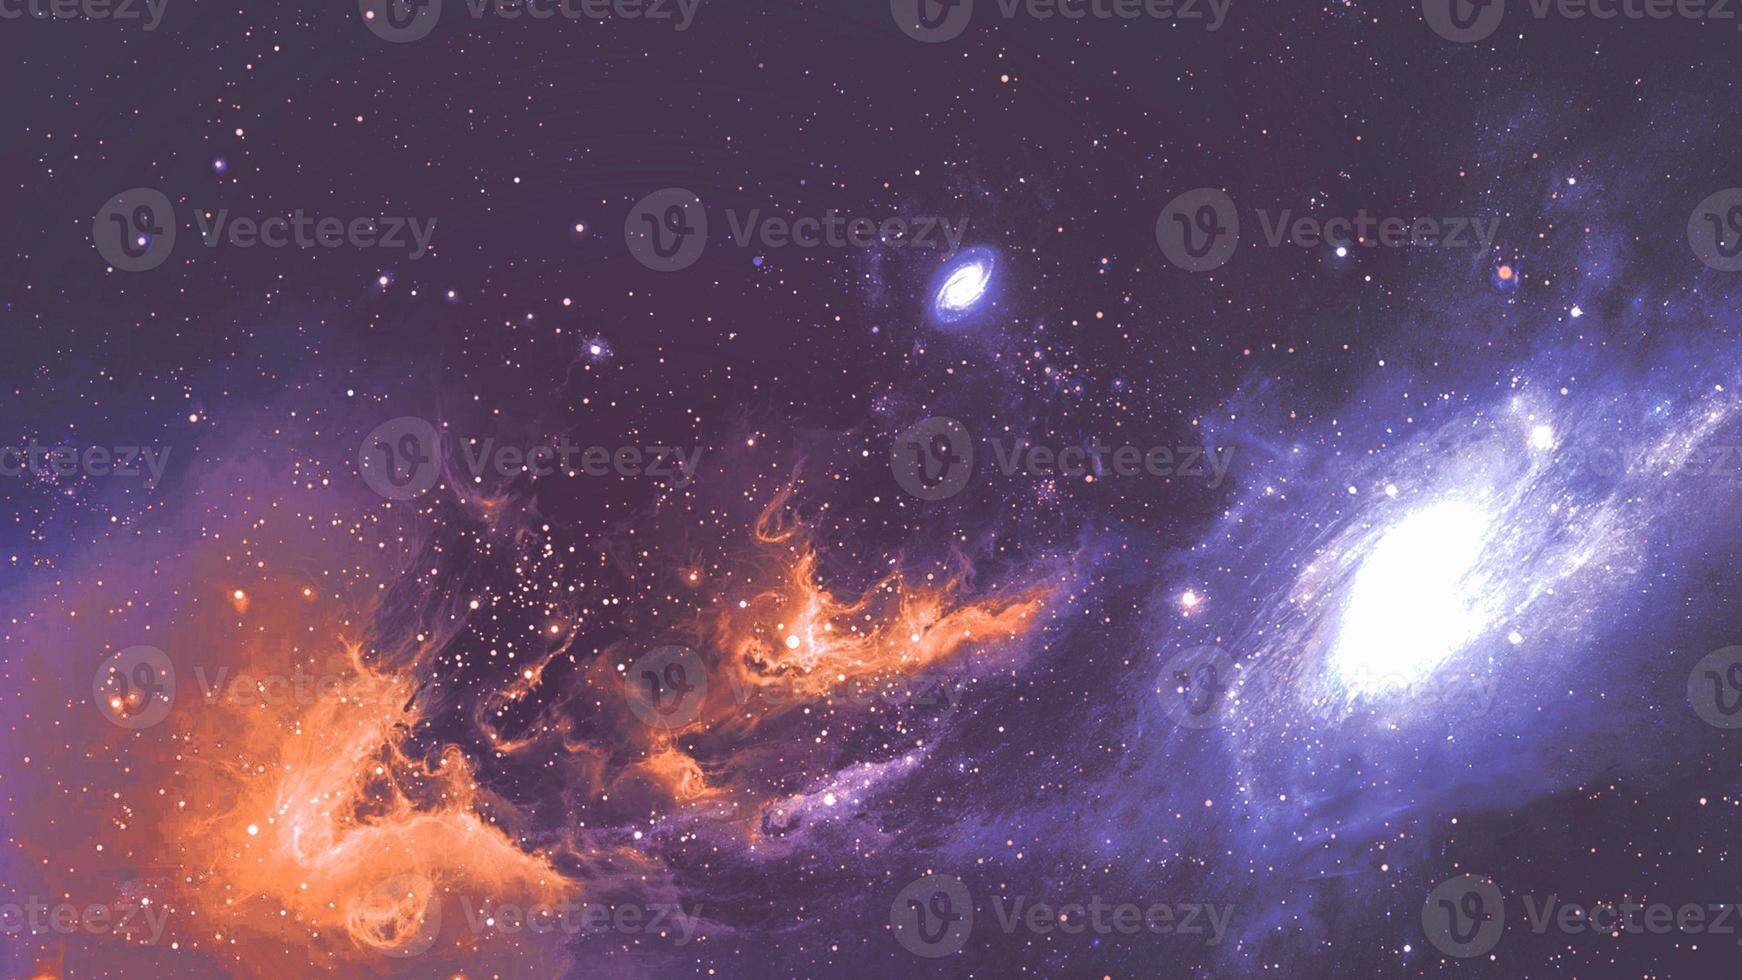 oneindige mooie kosmos donkerblauwe en oranje achtergrond met nevel, cluster van sterren in de ruimte. schoonheid van eindeloze universum gevulde sterren.kosmische kunst, science fiction behang foto